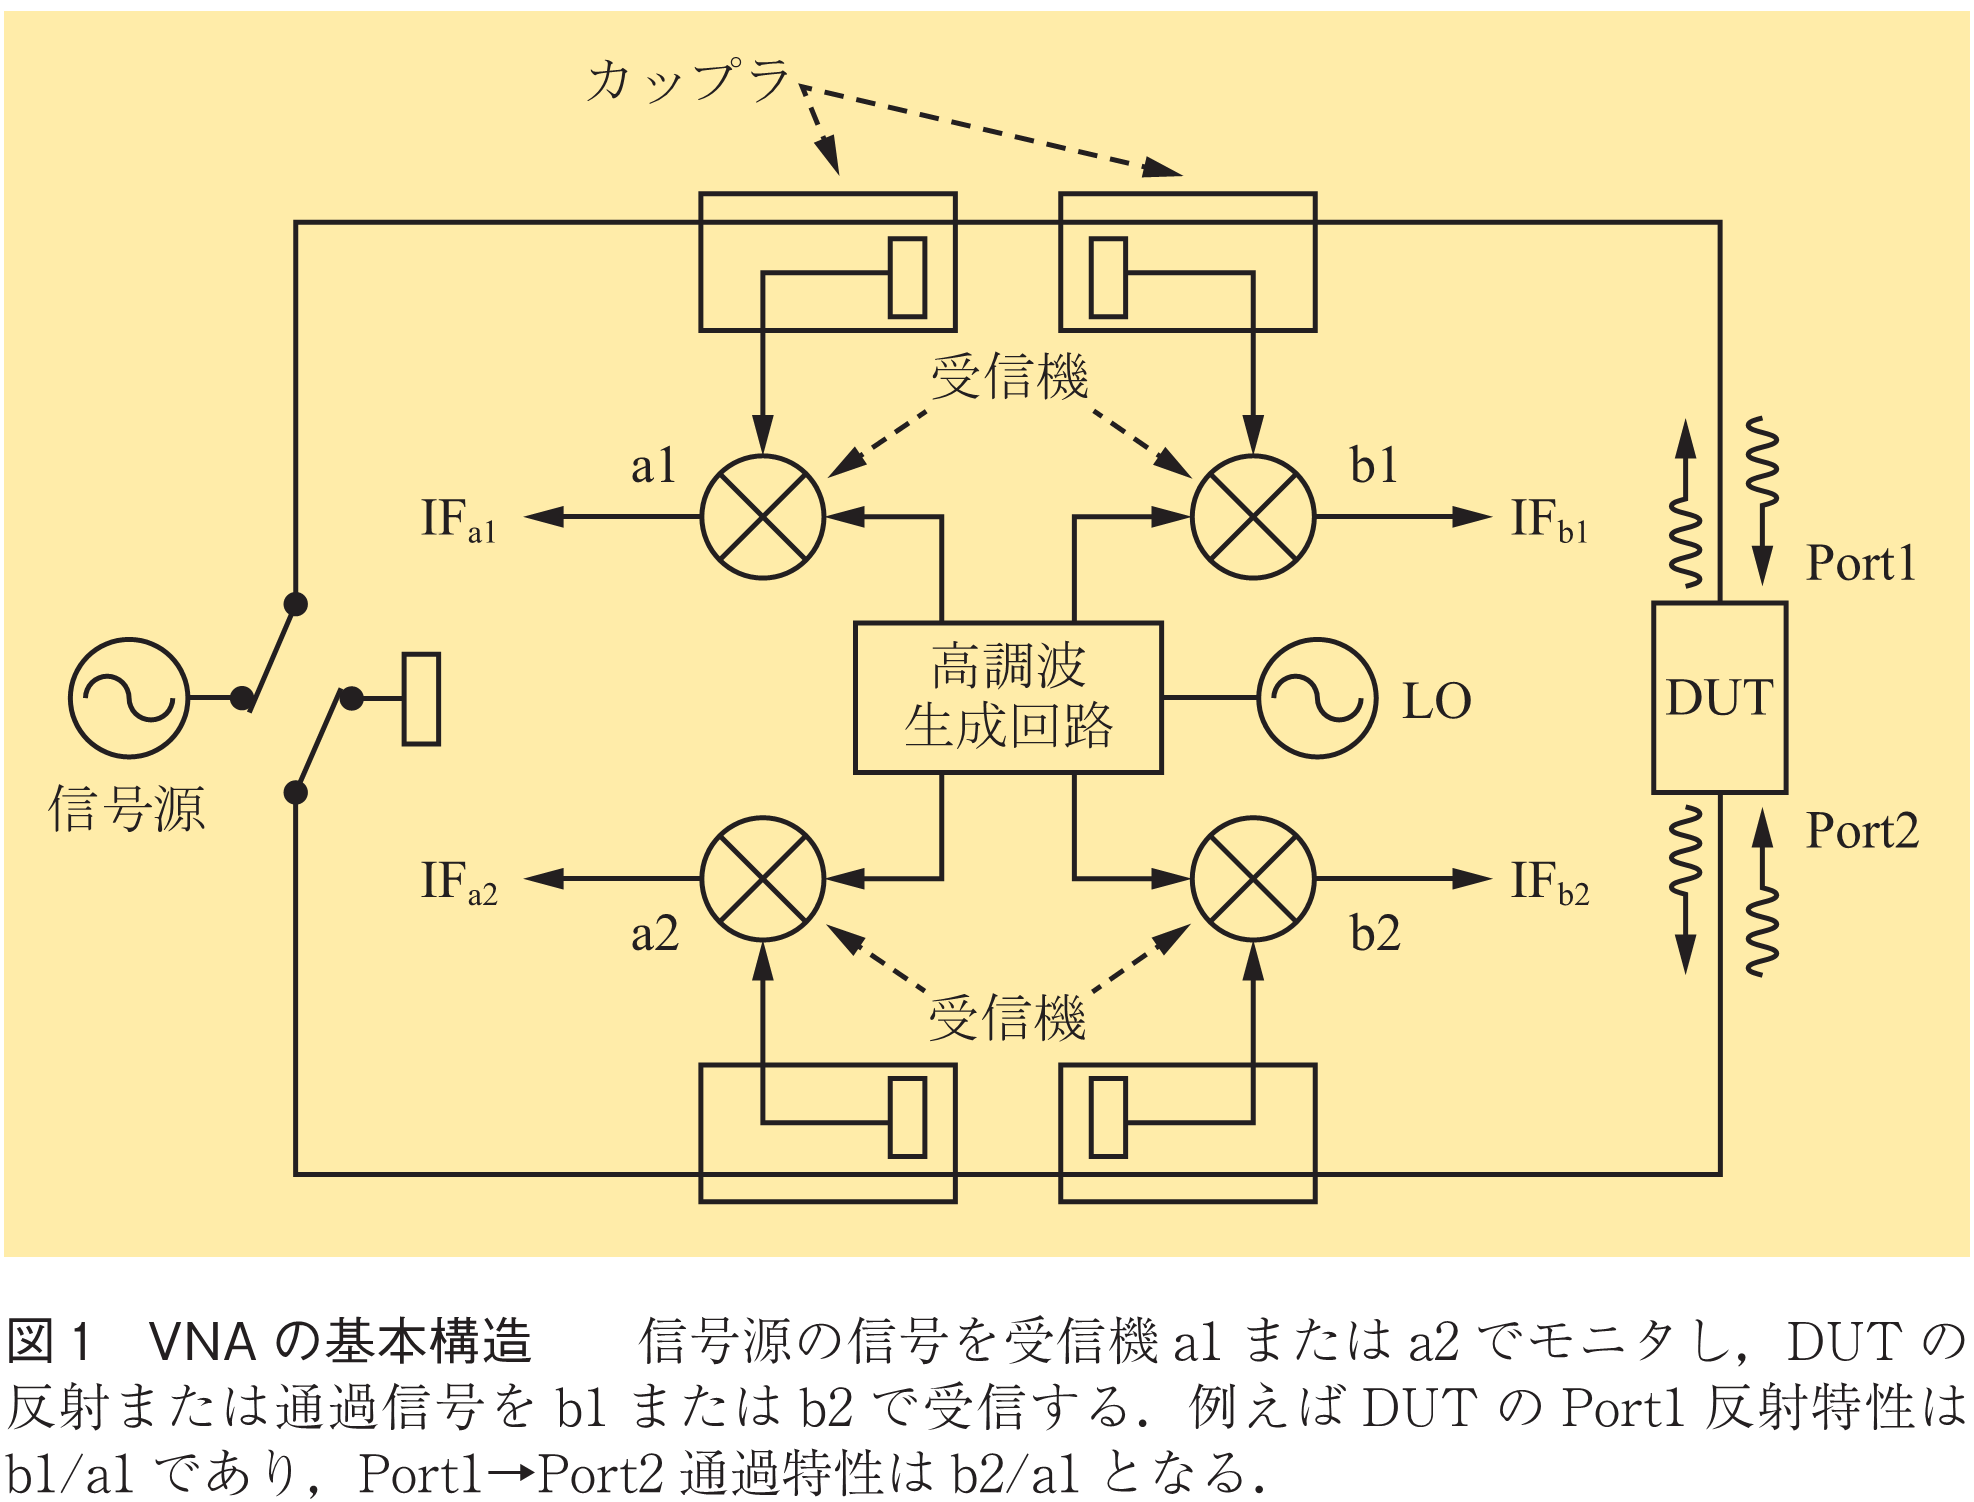 図1　VNAの基本構造　　信号源の信号を受信機a1またはa2でモニタし，DUTの反射または通過信号をb1またはb2で受信する．例えばDUTのPort1反射特性はb1/a1であり，Port1→Port2通過特性はb2/a1となる．